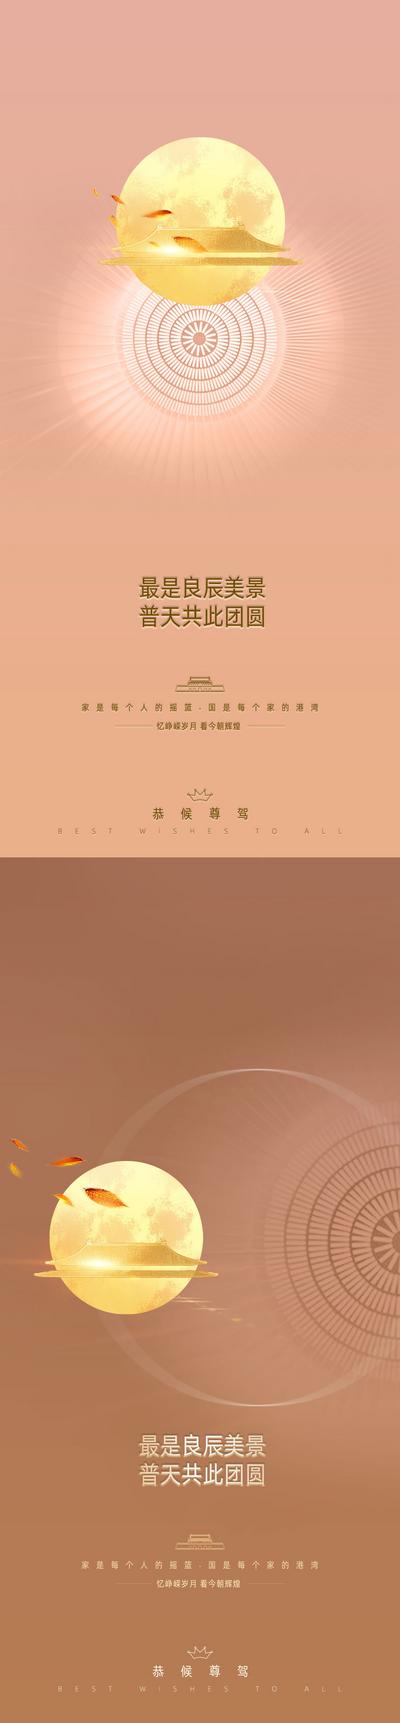 南门网 中秋节国庆节系列海报